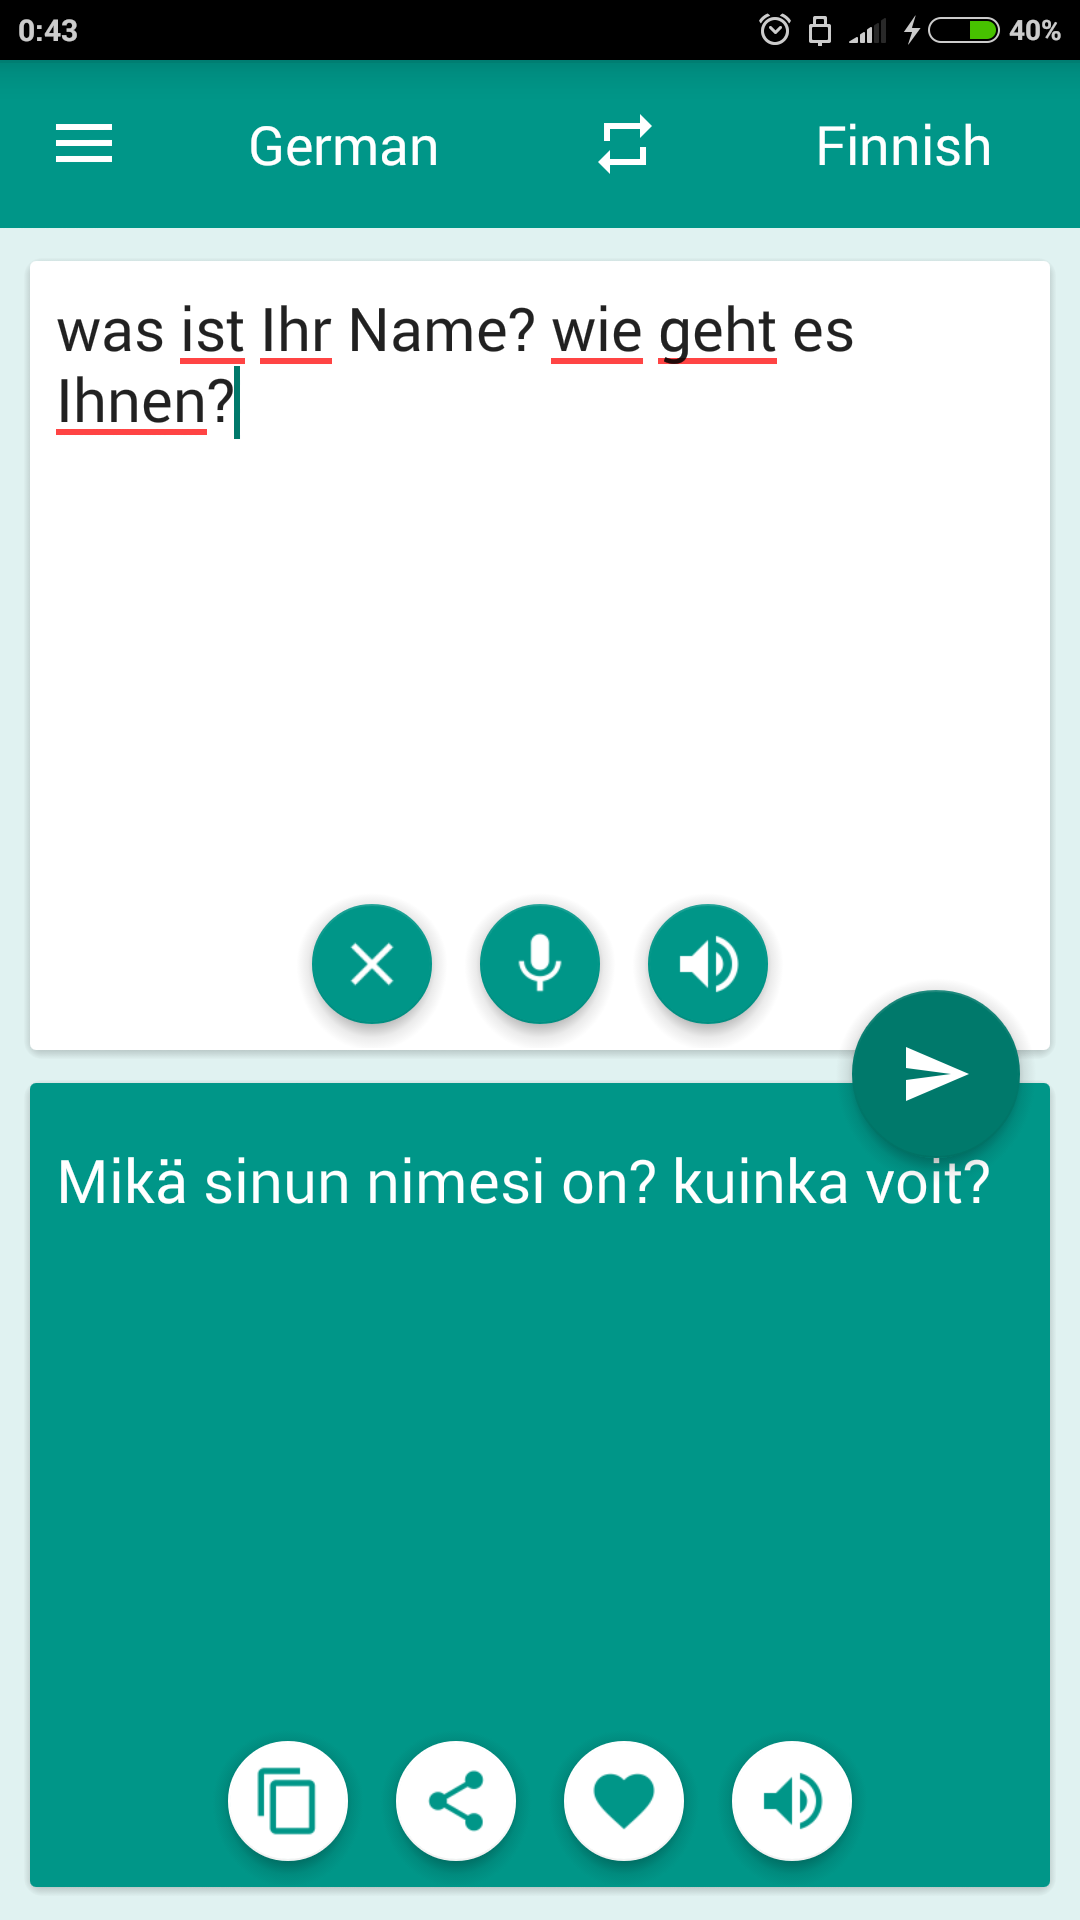 Android application Finnish-German Translator screenshort